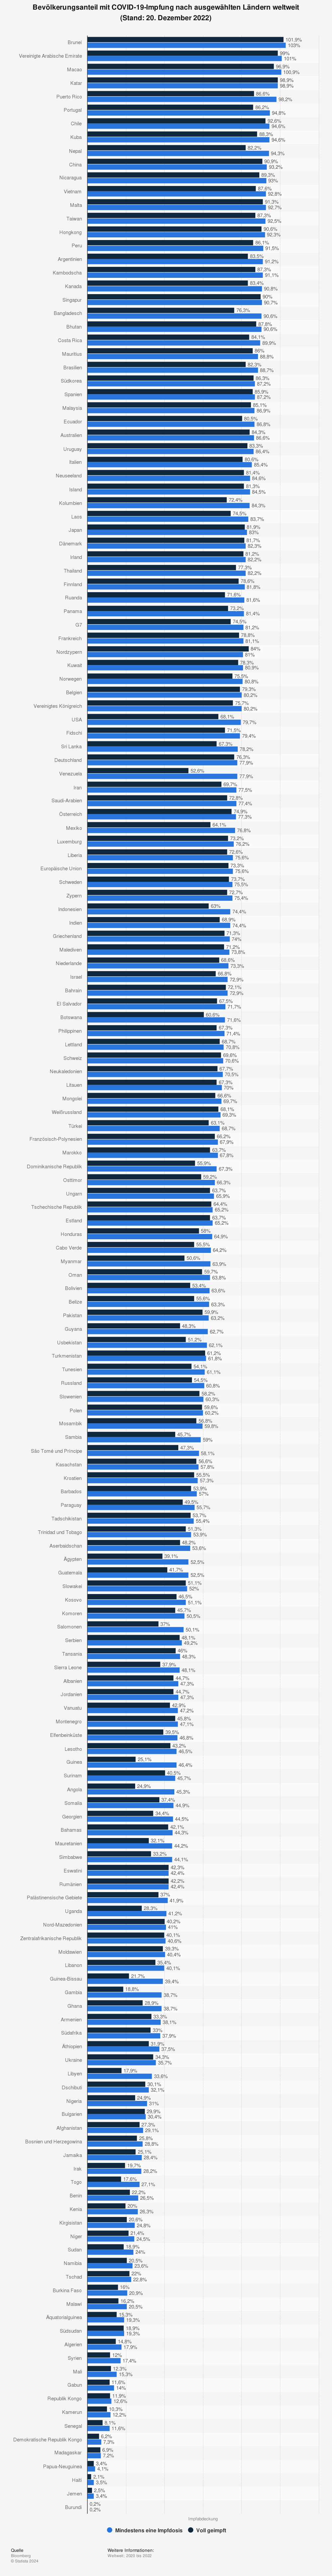 Statistik: Bevölkerungsanteil mit COVID-19-Impfung nach ausgewählten Ländern weltweit (Stand: 20. Dezember 2022) | Statista